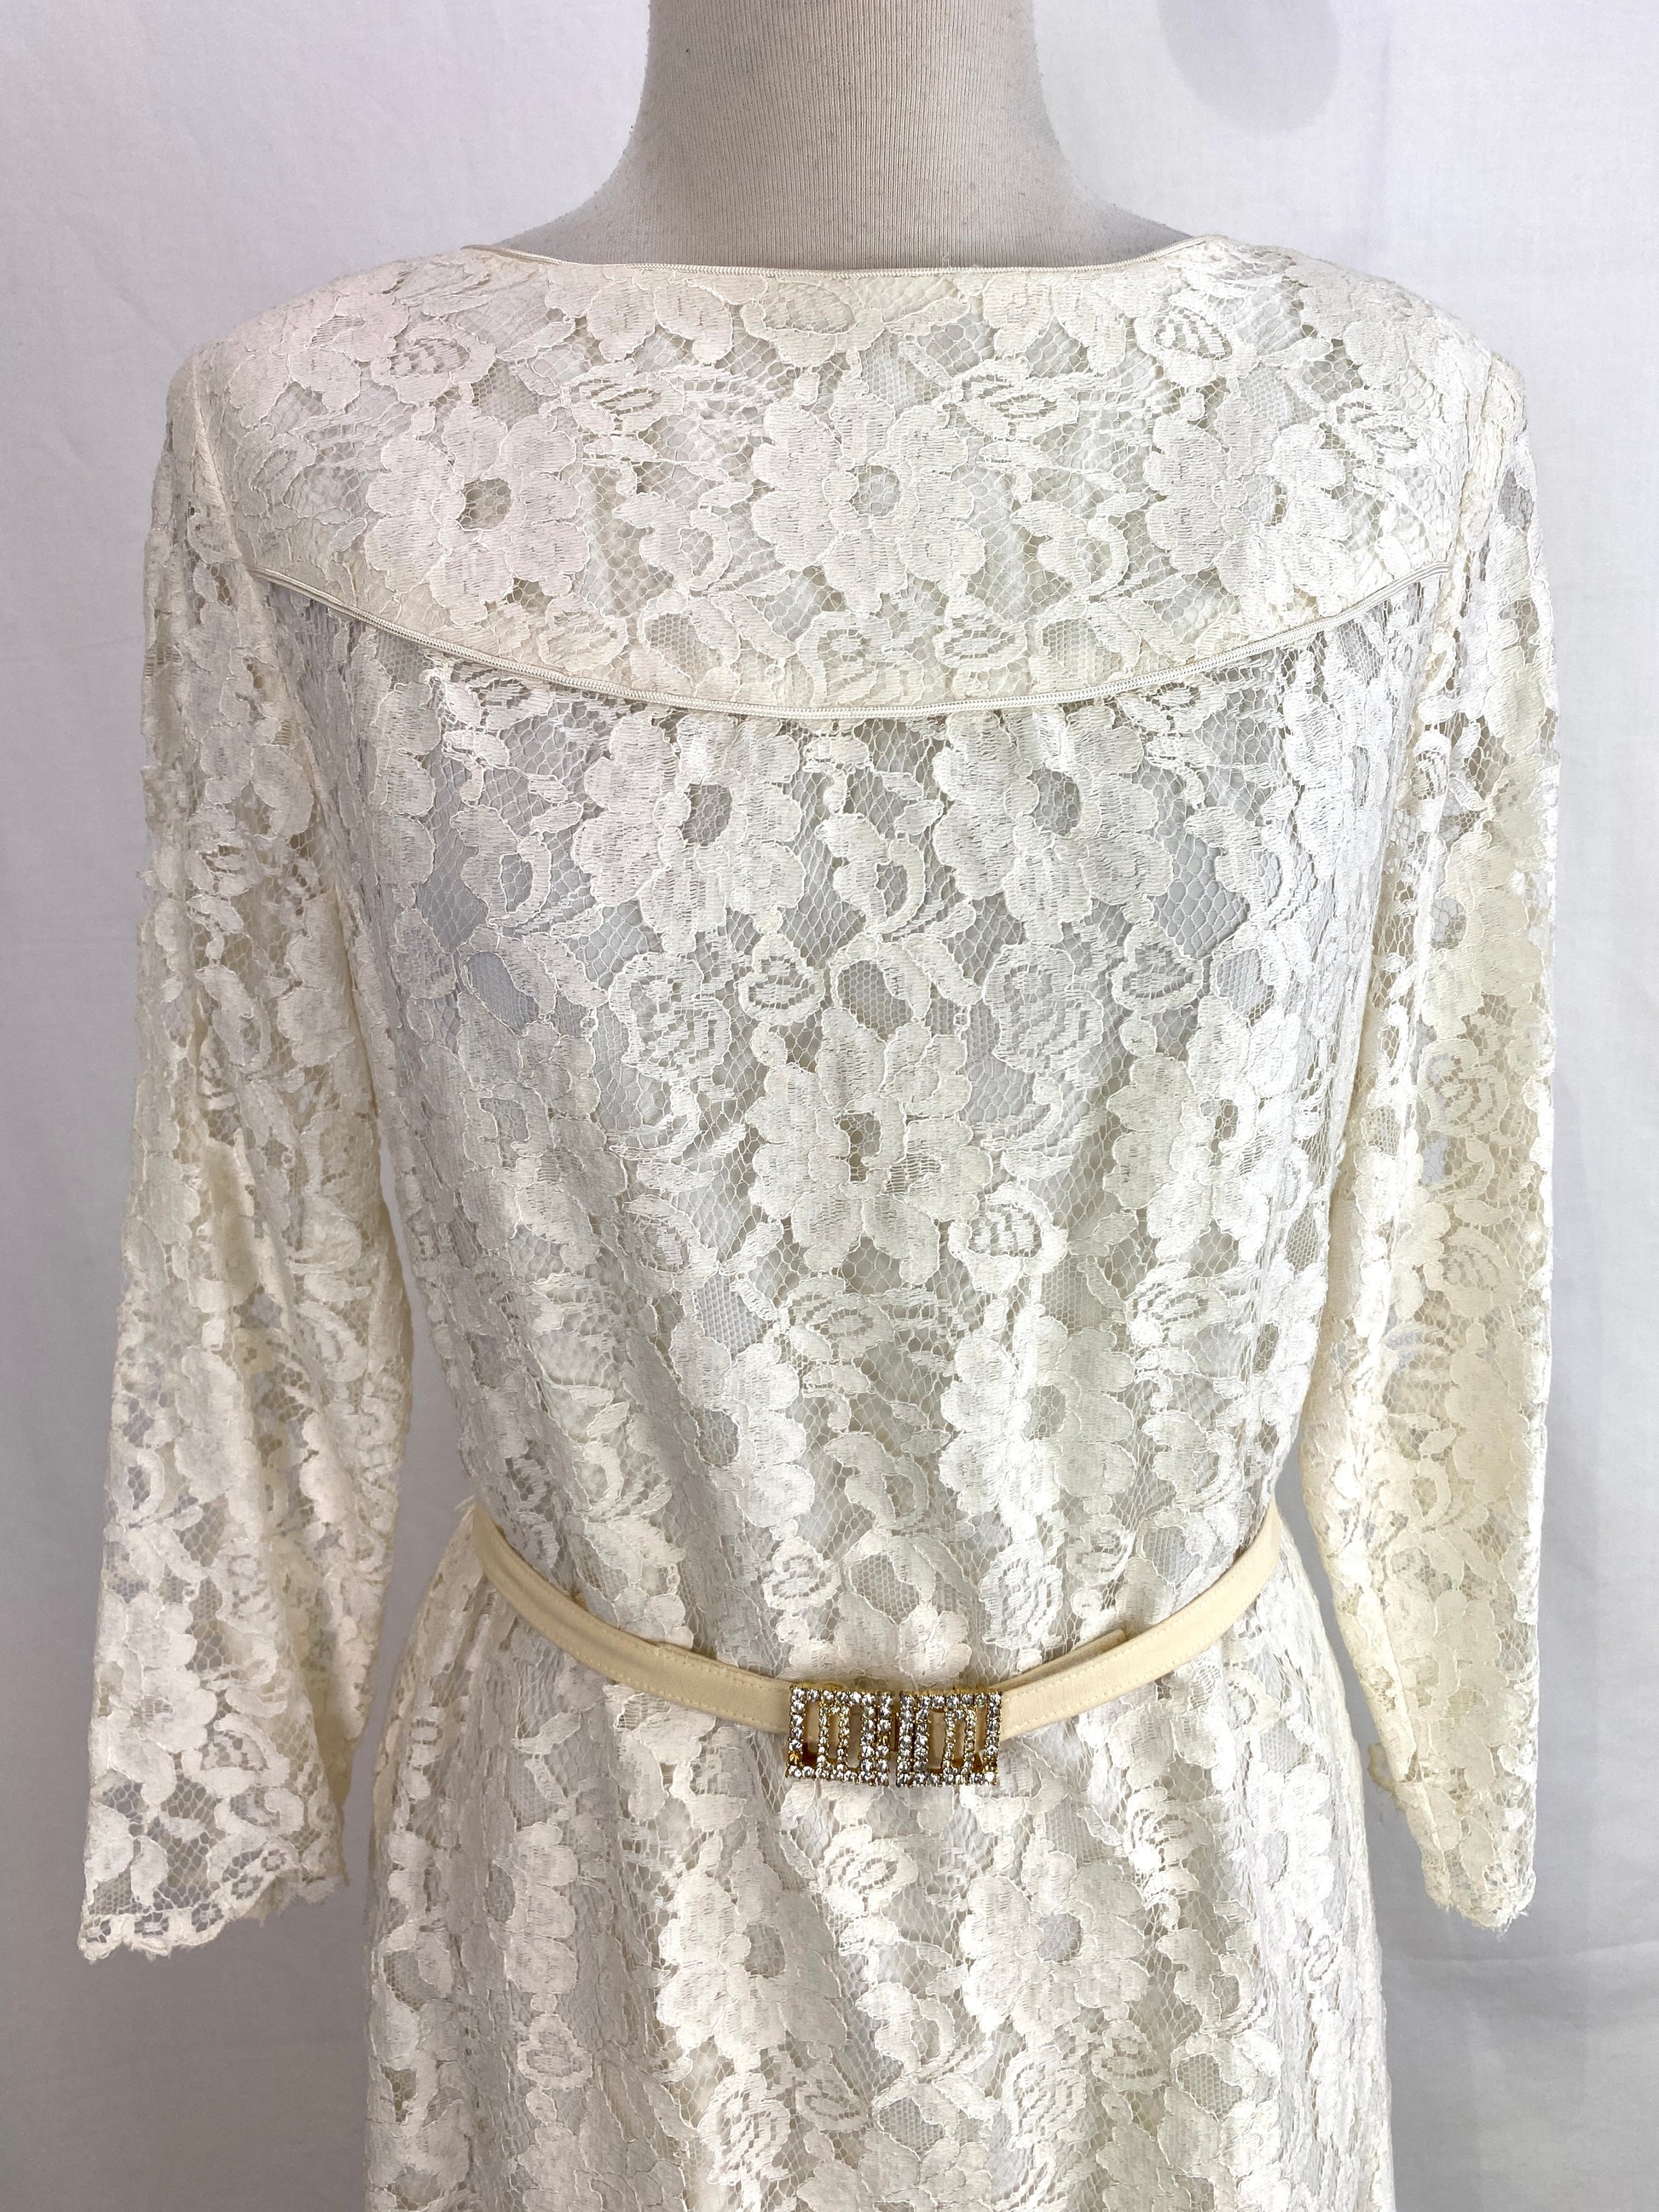 Vintage 1980s White Lace Dress, Utah Tailoring, Medium